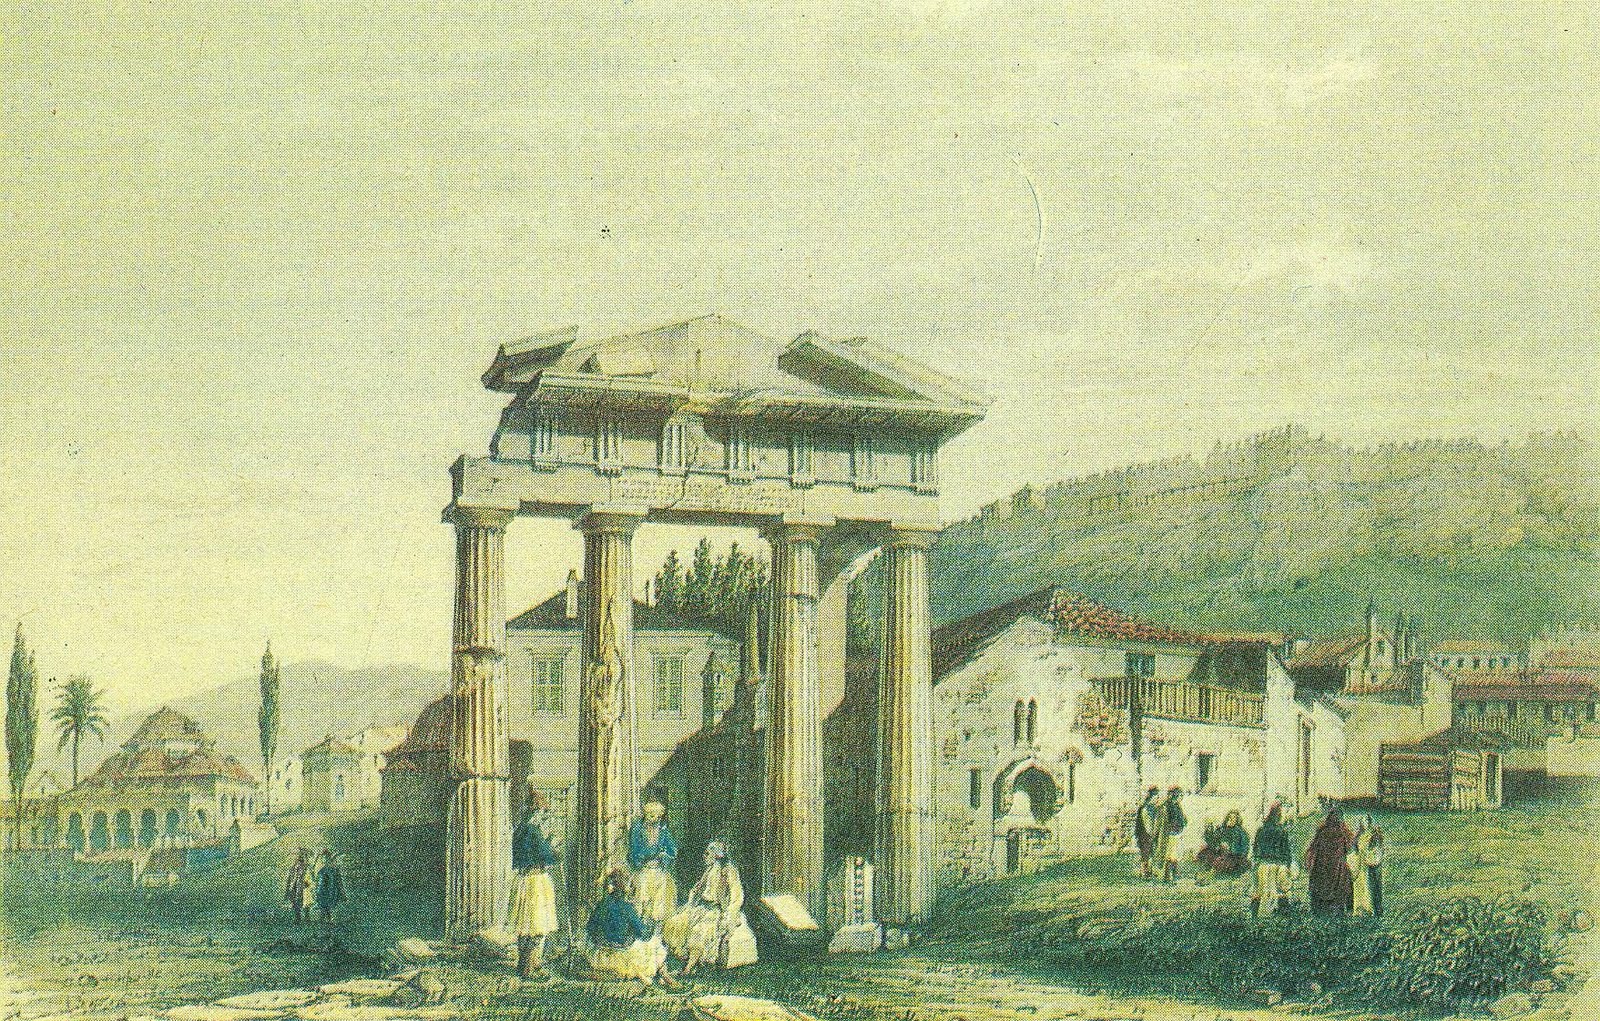 Αθήνα – Η πύλη της αγοράς (Η Παζαρόπορτα)] το 1830. Στα δεξιά φαίνεται η εκκλησία της Σωτήρας της Παζαρόπορτας, που δεν υπάρχει σήμερα, παράξενος μικρός ΝαΪσκος γιατί είχε το ιερό του στραμμένο προς στον Βορρά και όχι στην Ανατολή.